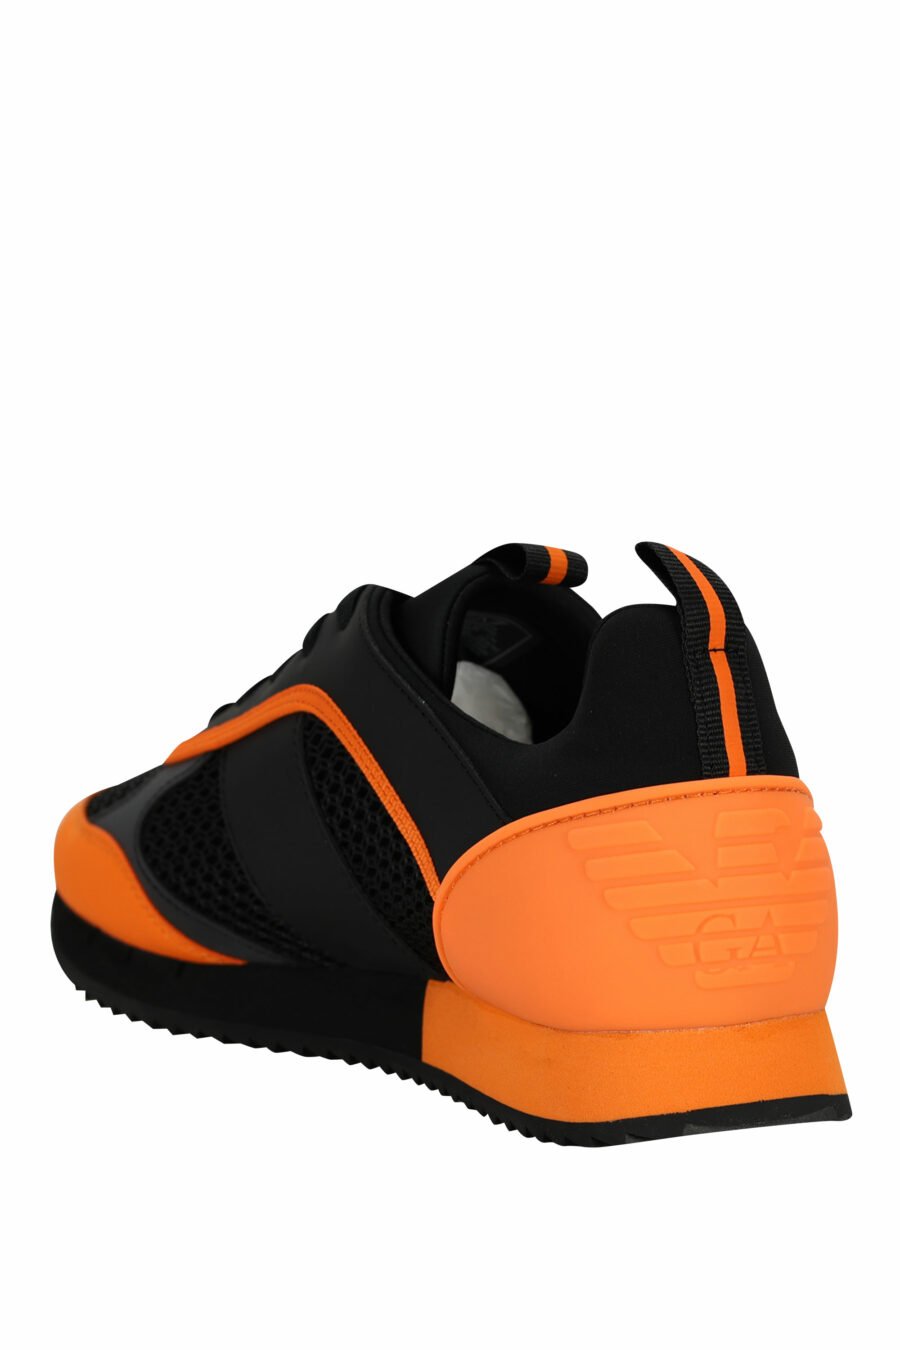 Baskets noires avec logo orange "lux identity" - 8057970798149 3